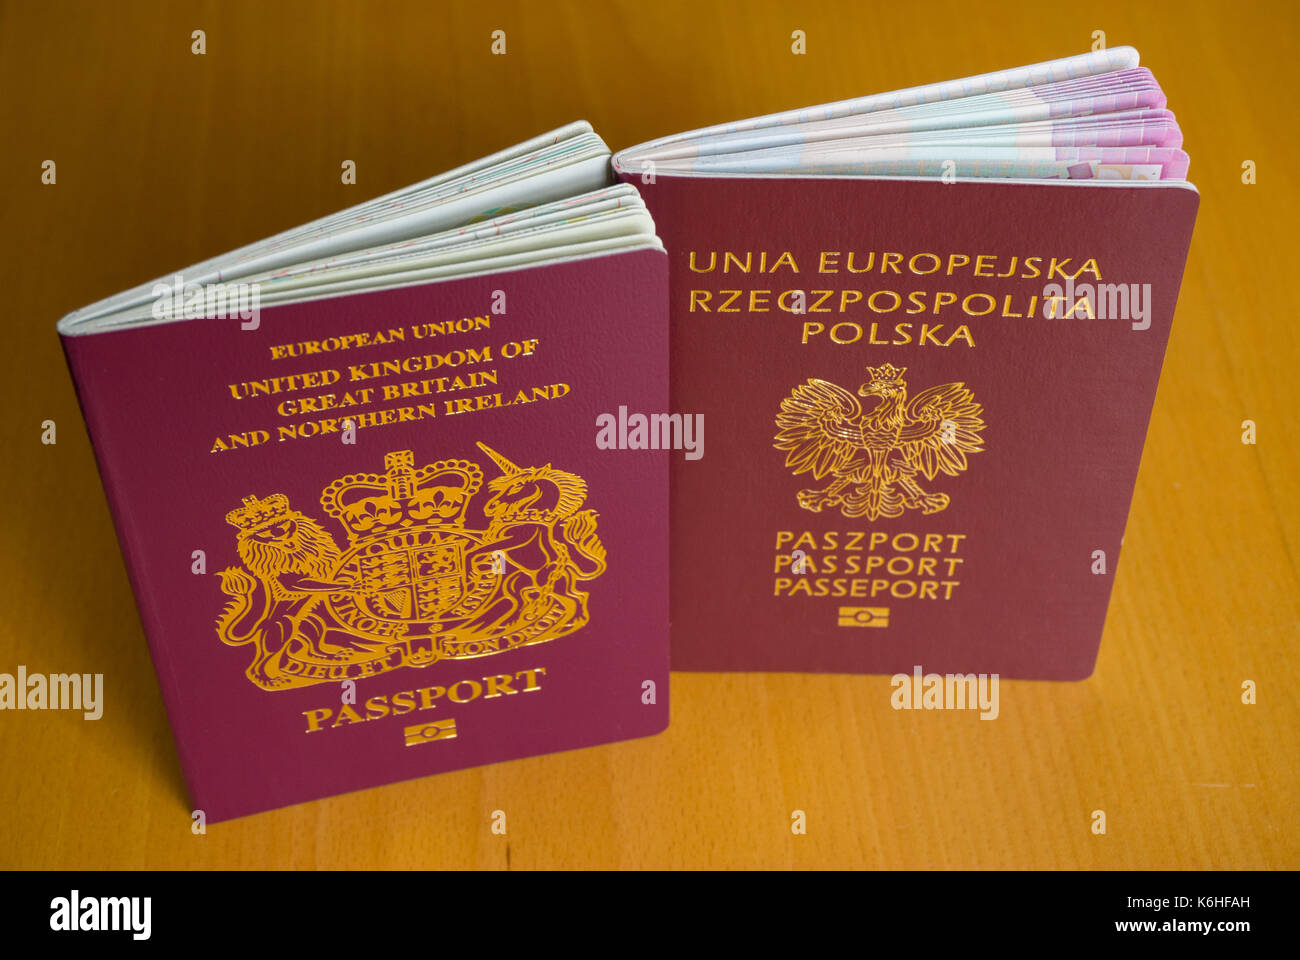 British passport and Polish passport Stock Photo